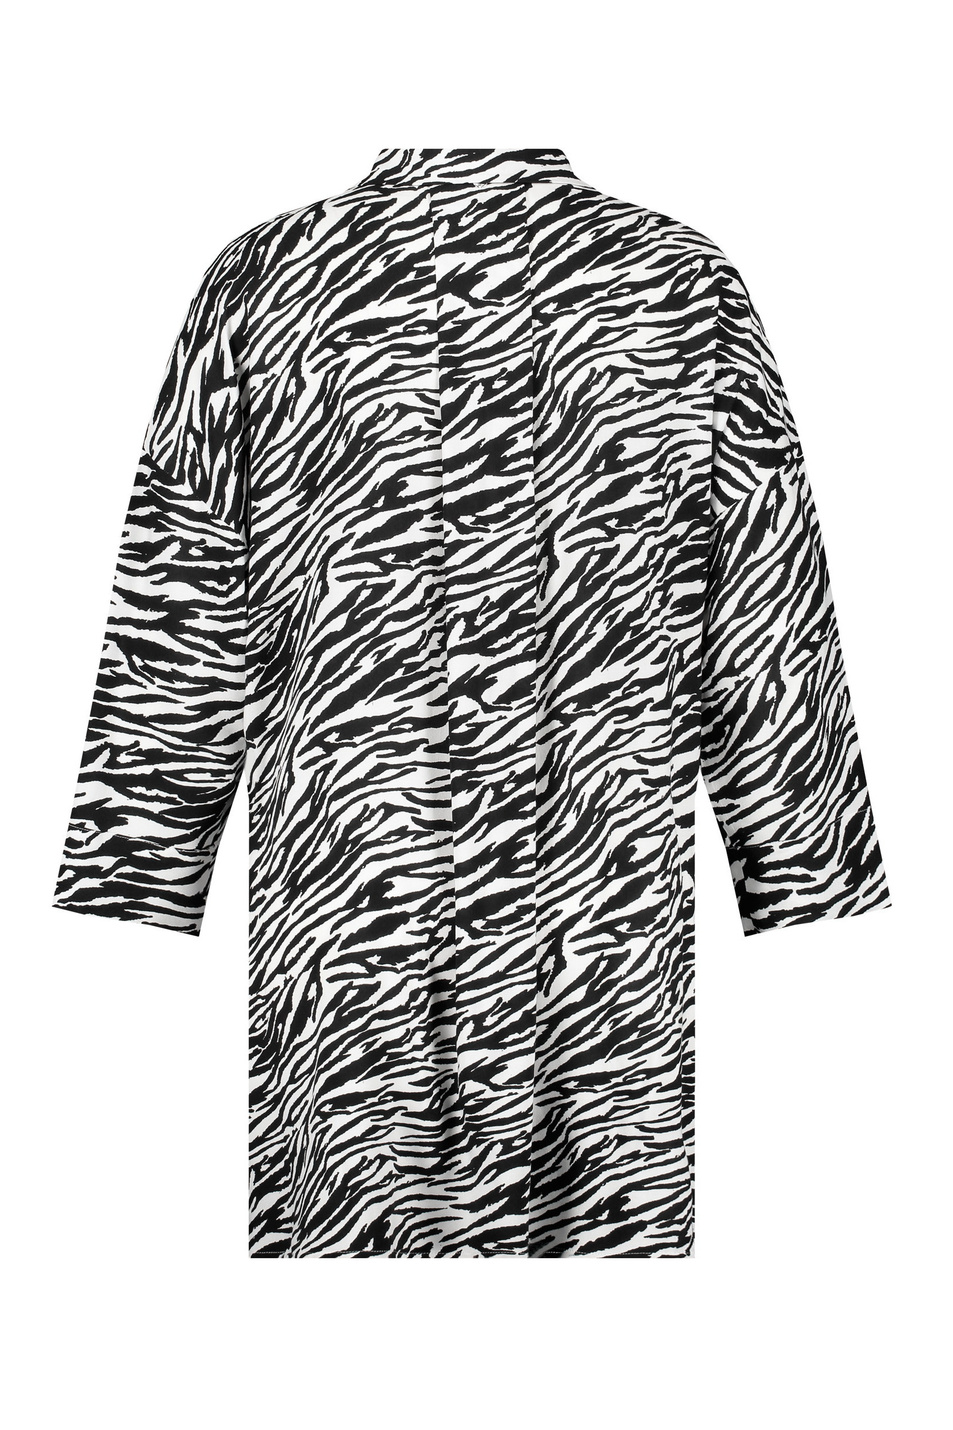 Samoon Удлиненная блузка с принтом под зебру (цвет ), артикул 660409-21018 | Фото 2